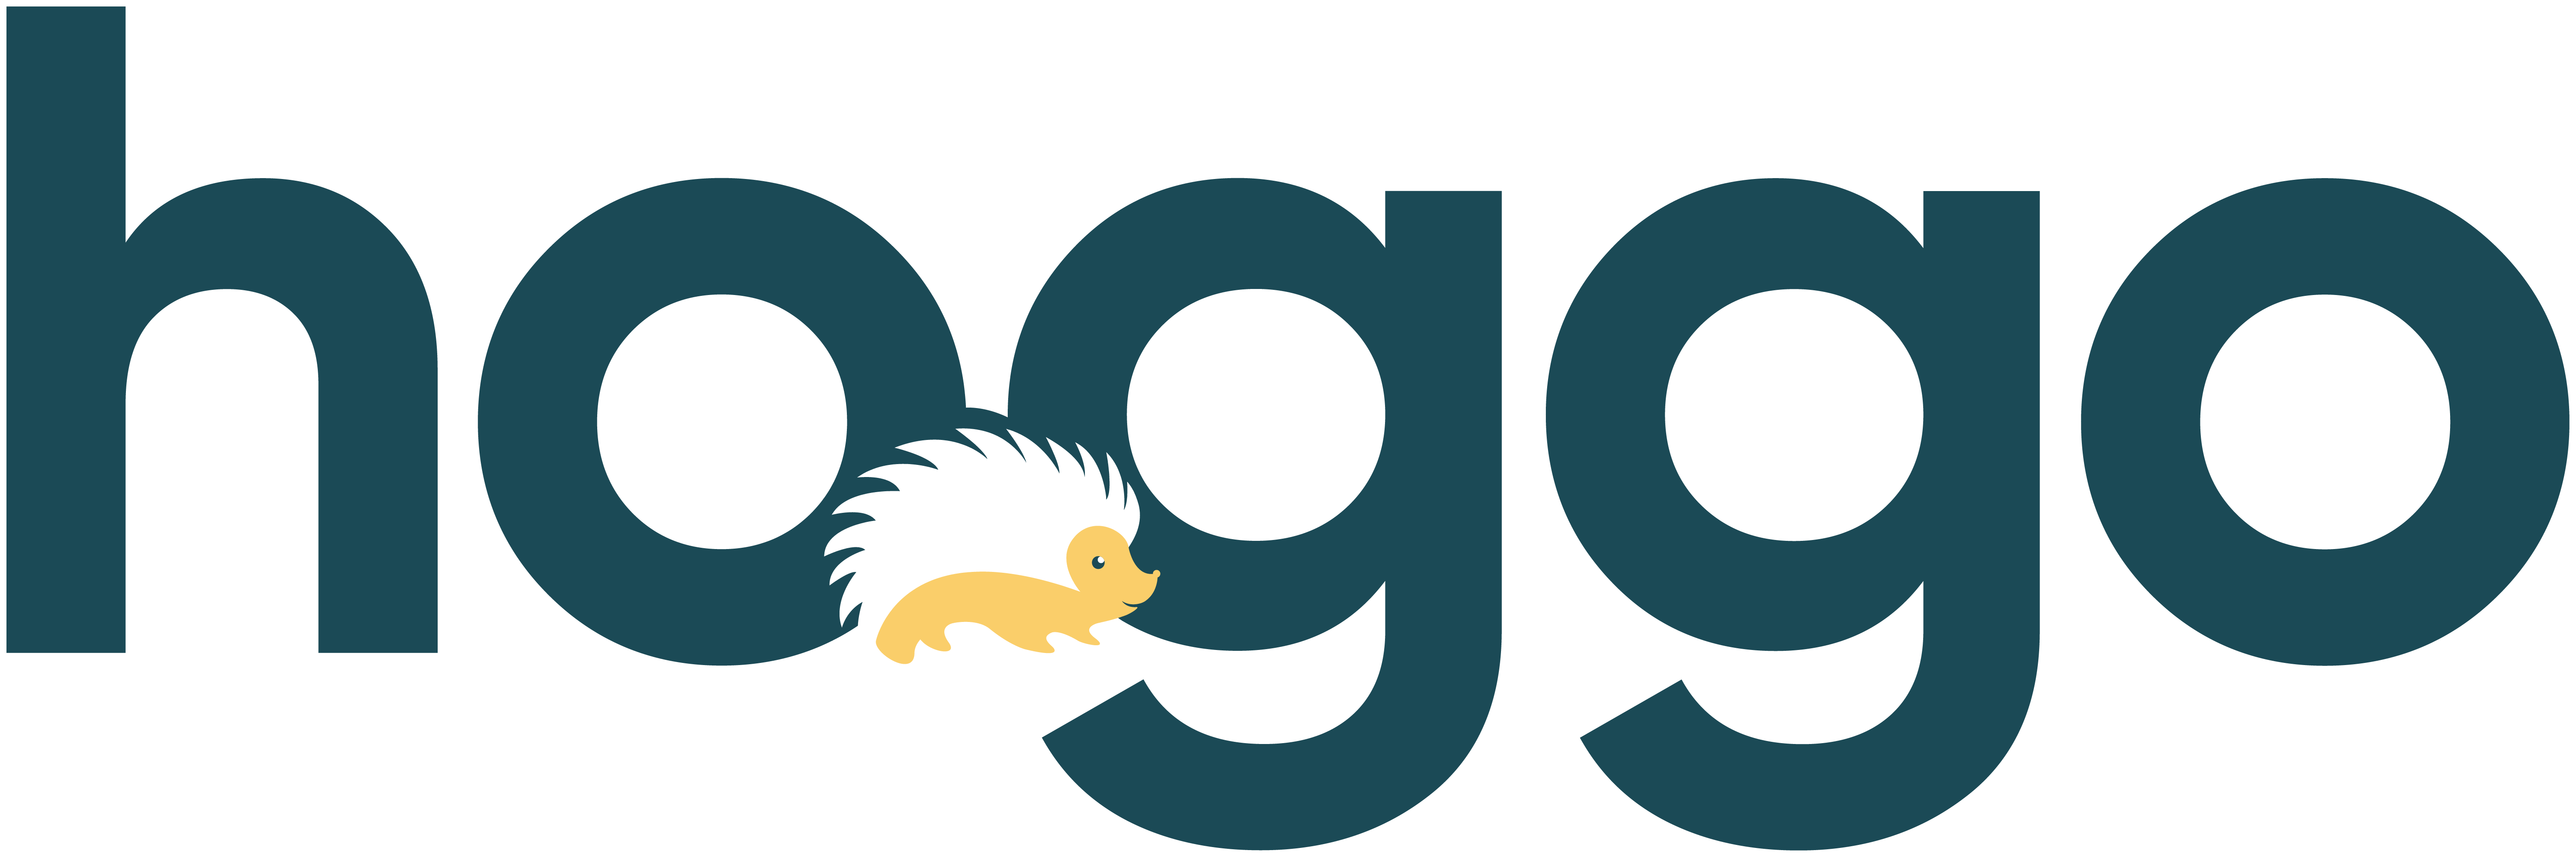 Hoggo Logo - Main Colors